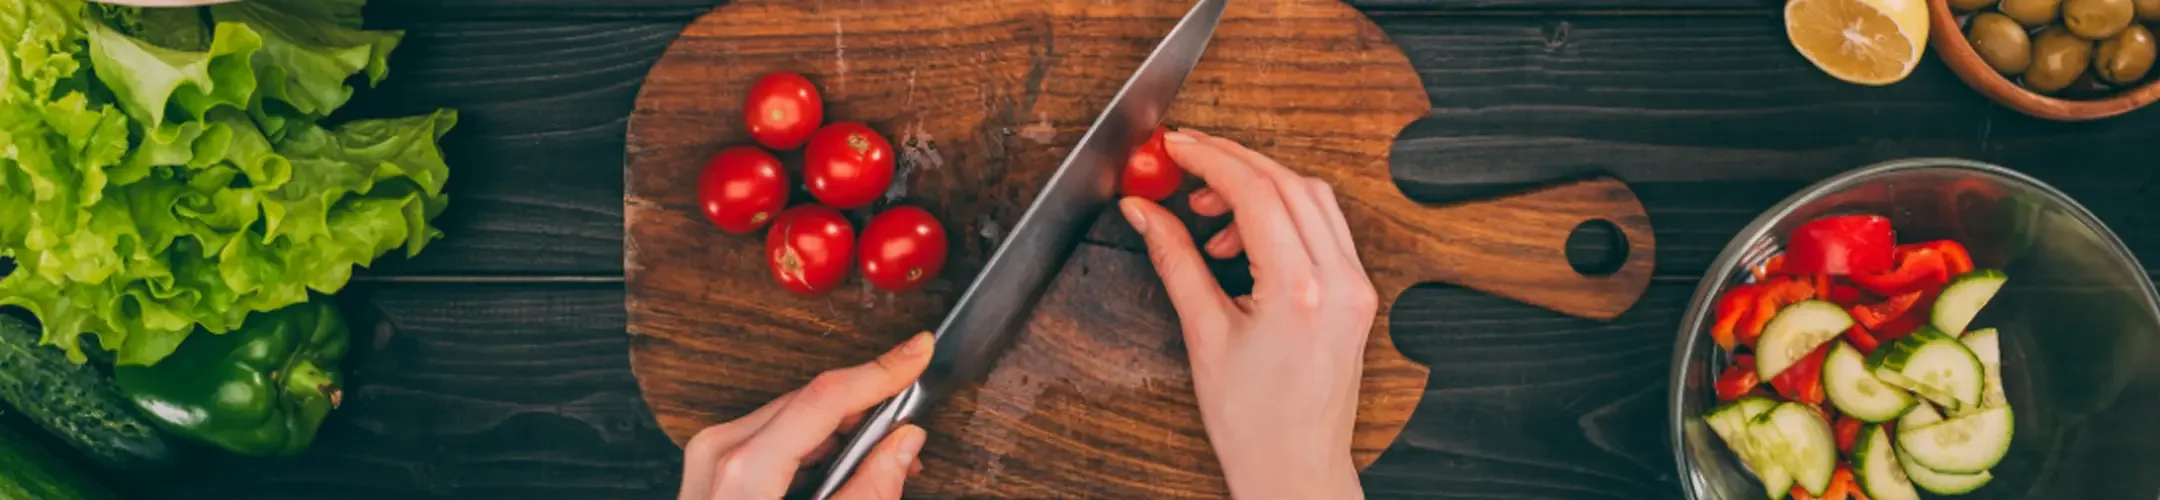 Messer, das Tomaten schneidet